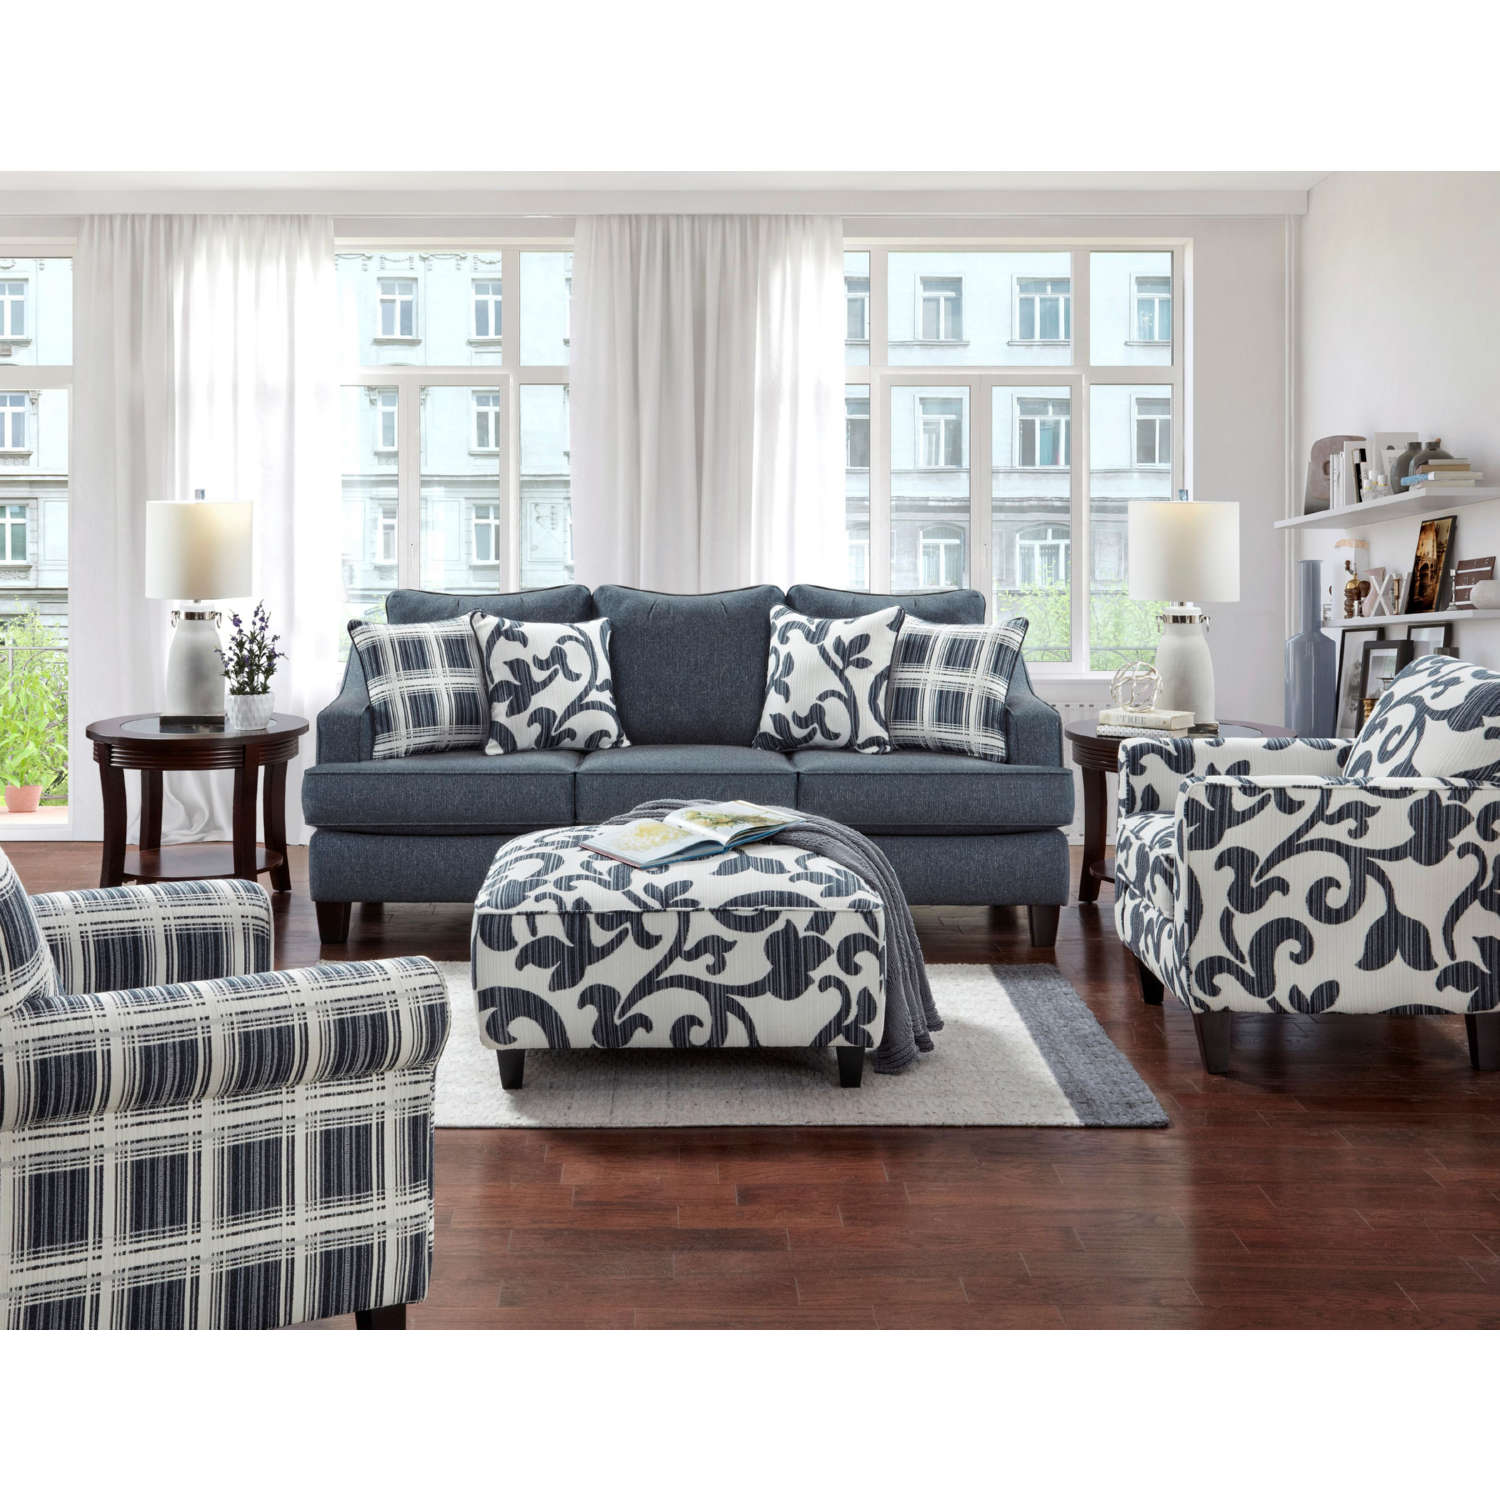 Southern Furniture 2334 Sleeper Sofa